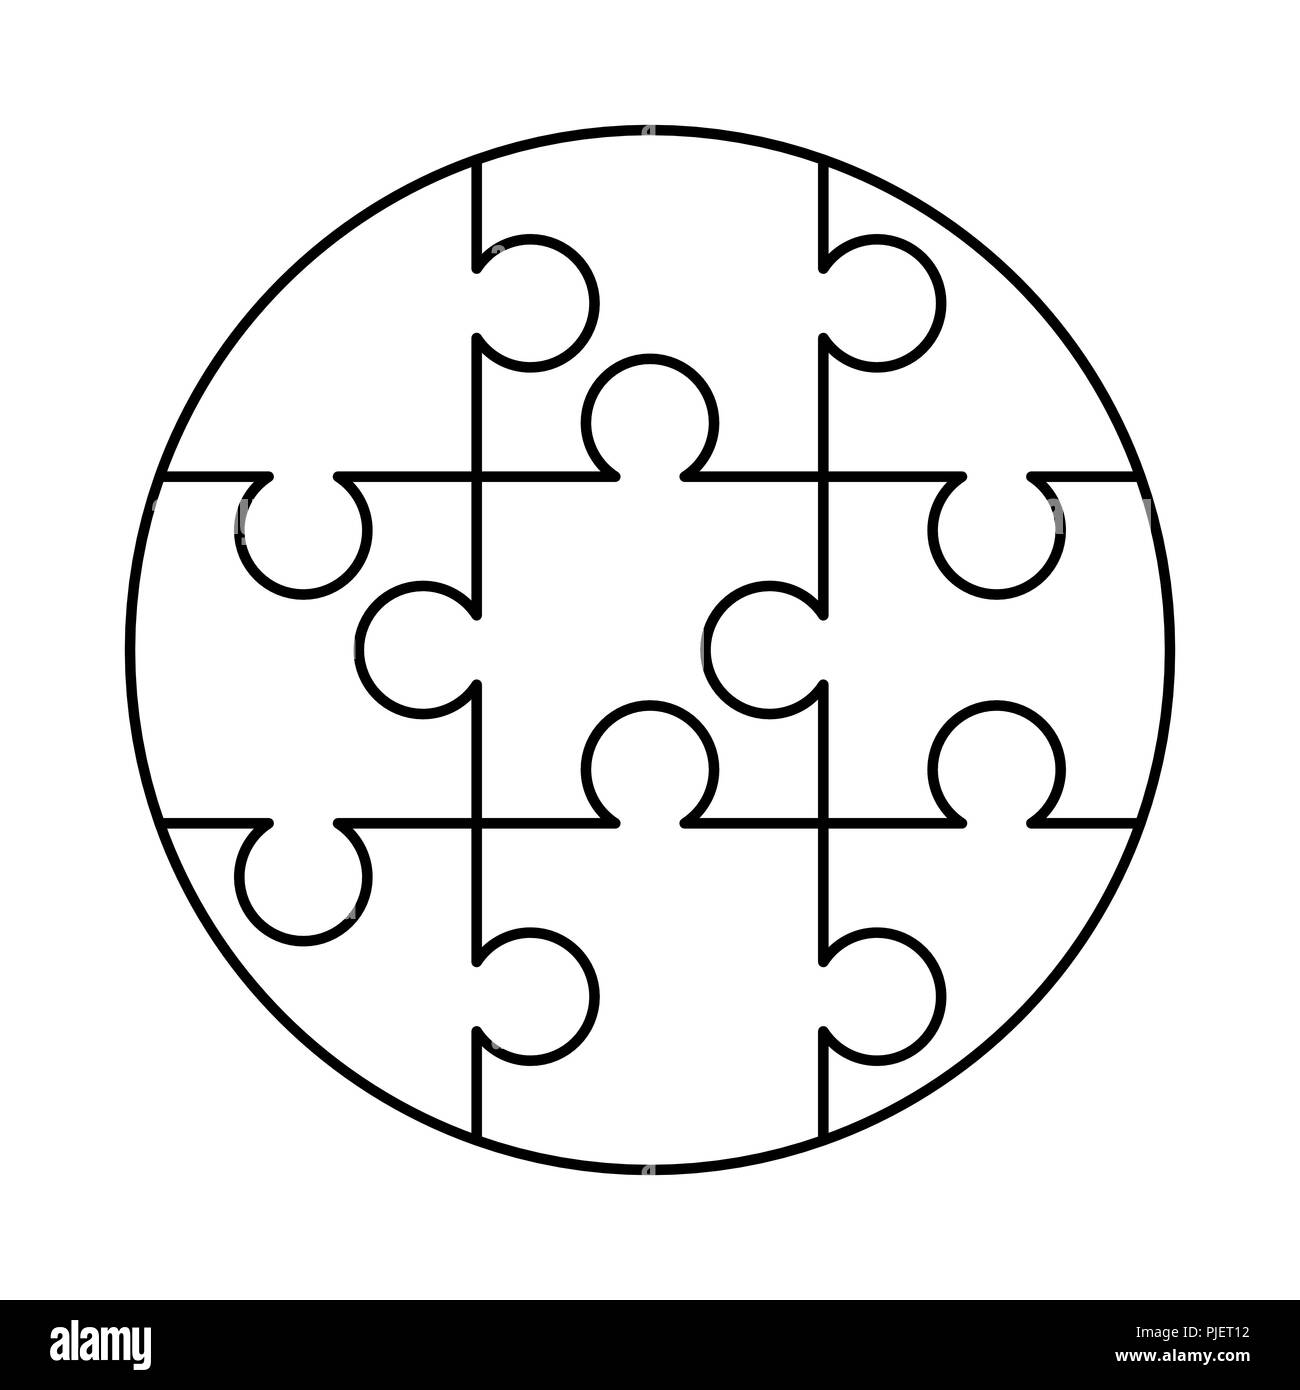 9 blanco puzzles piezas dispuestas en una forma redonda. Plantilla Rompecabezas listo para imprimir. Directrices de corte blanco Imagen de stock - Alamy